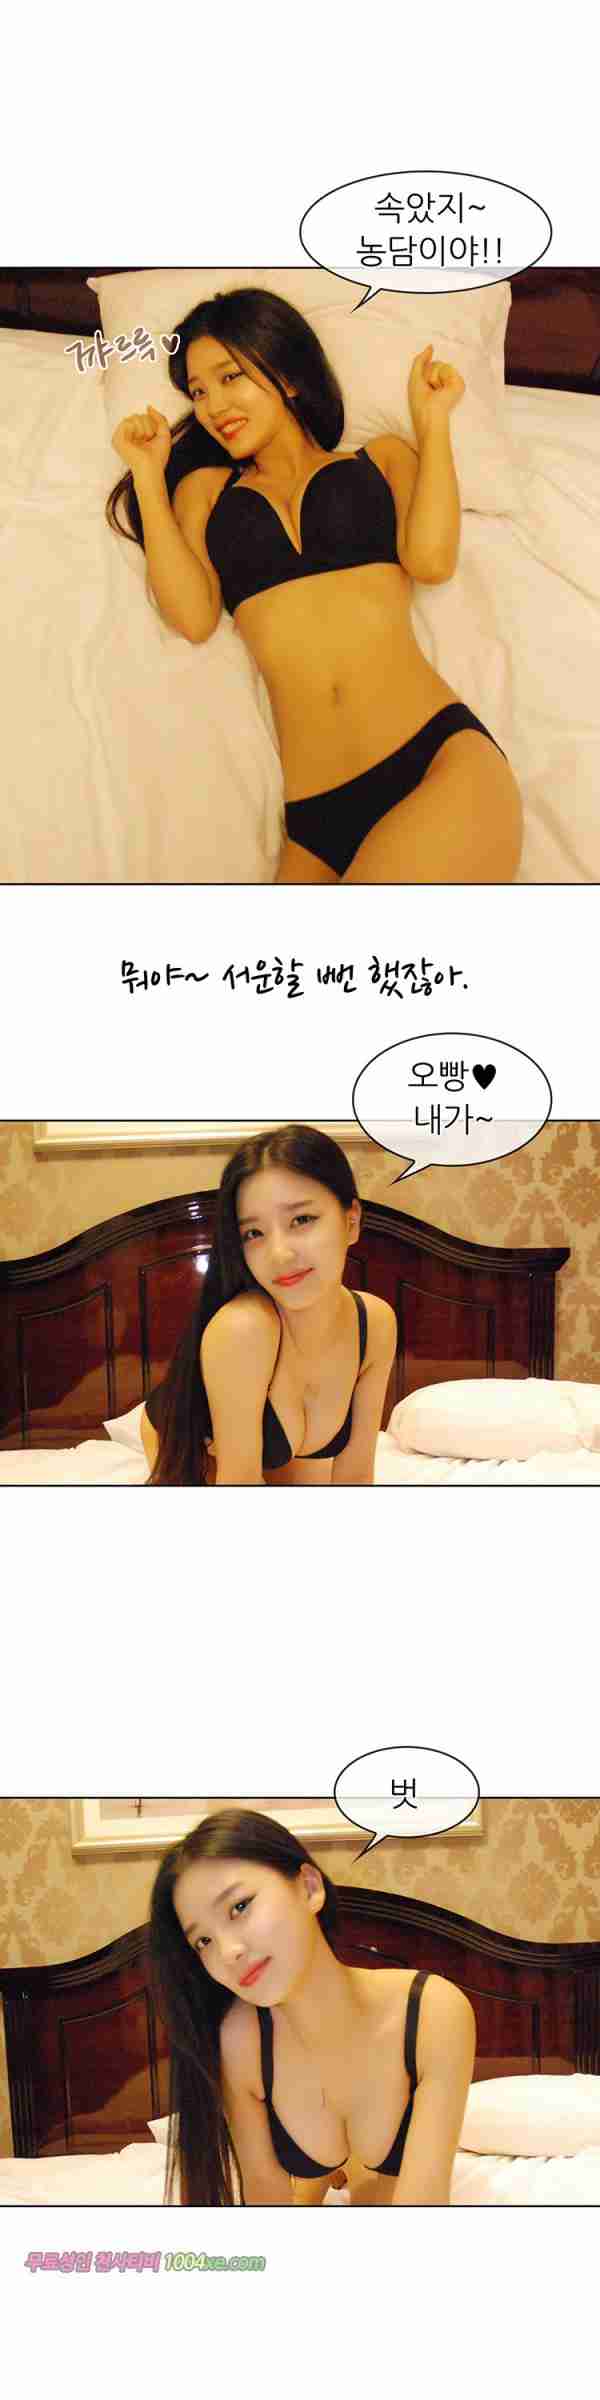 [韩国漫画]ID0015 韩国真人漫画15.rar--性感提示：令人迷醉丰乳夜店装半裸出镜丝臀